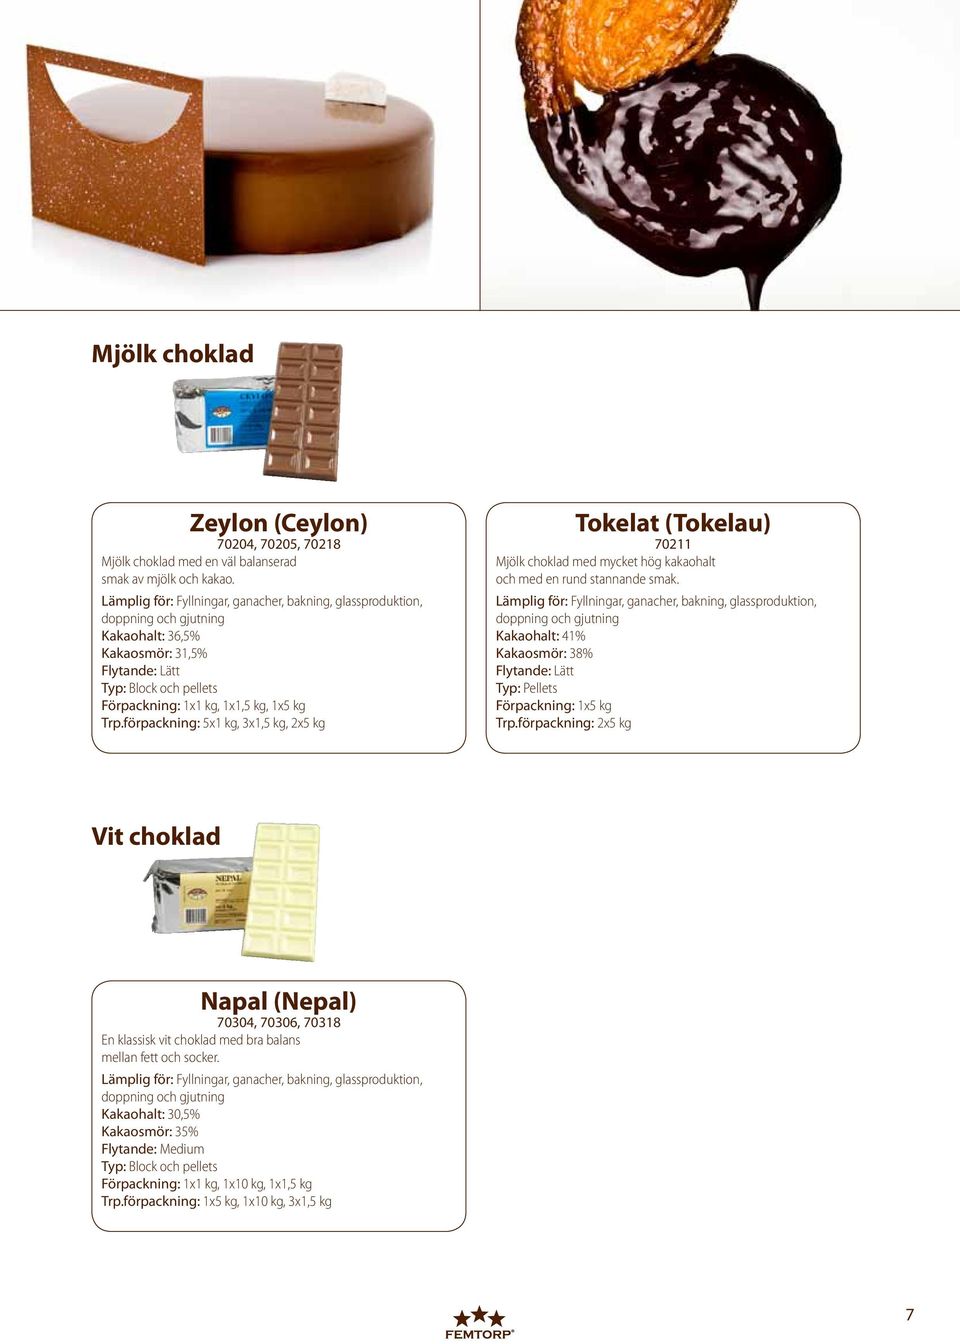 förpackning: 5x1 kg, 3x1,5 kg, 2x5 kg Tokelat (Tokelau) 70211 Mjölk choklad med mycket hög kakaohalt och med en rund stannande smak.